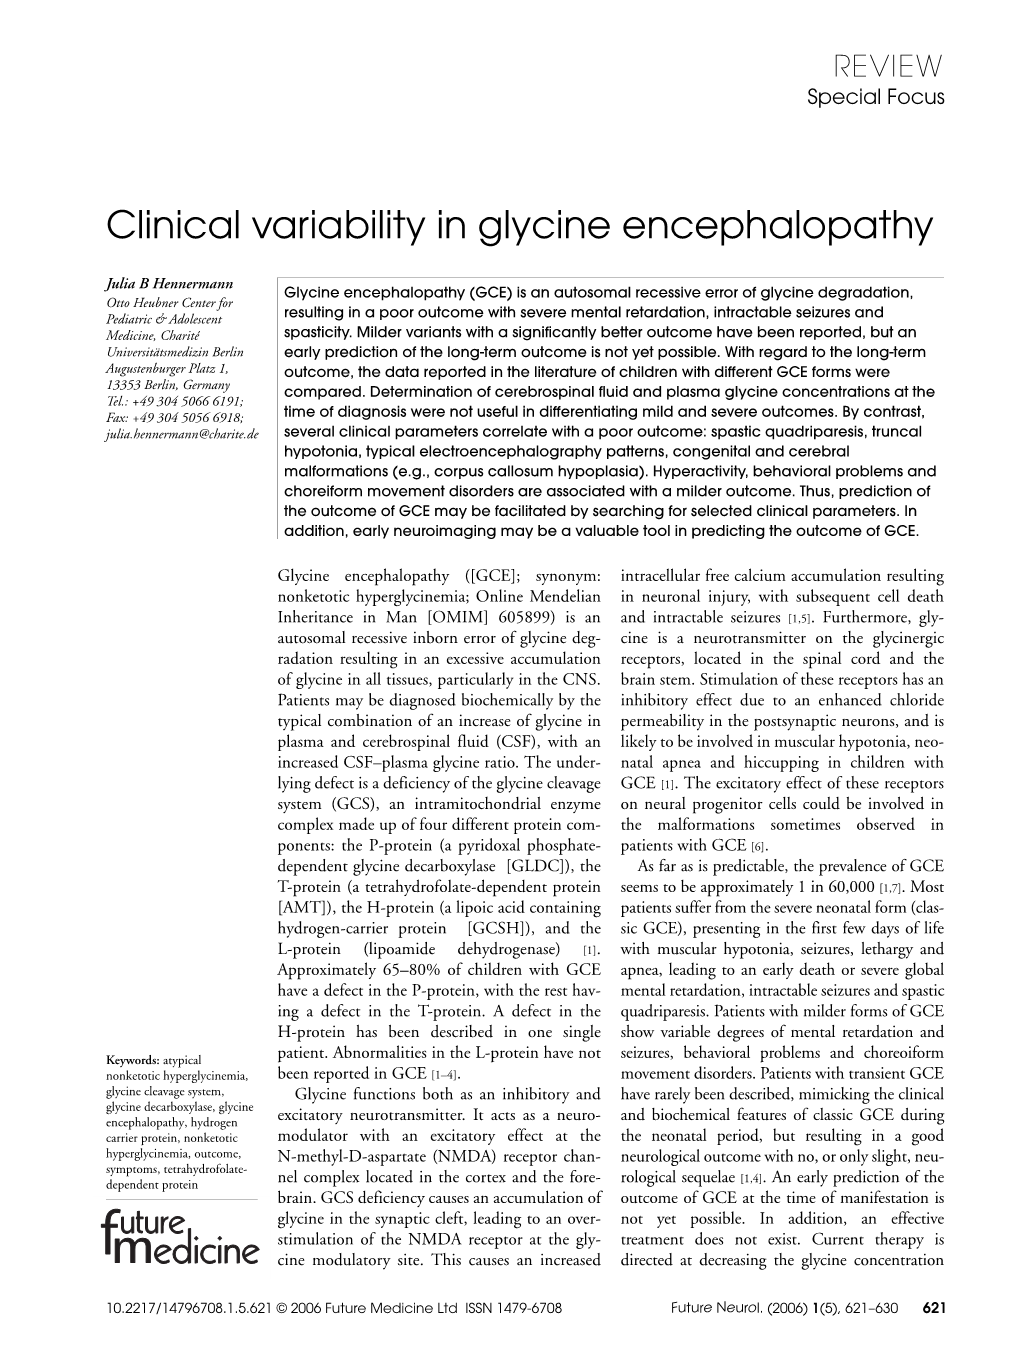 Clinical Variability in Glycine Encephalopathy